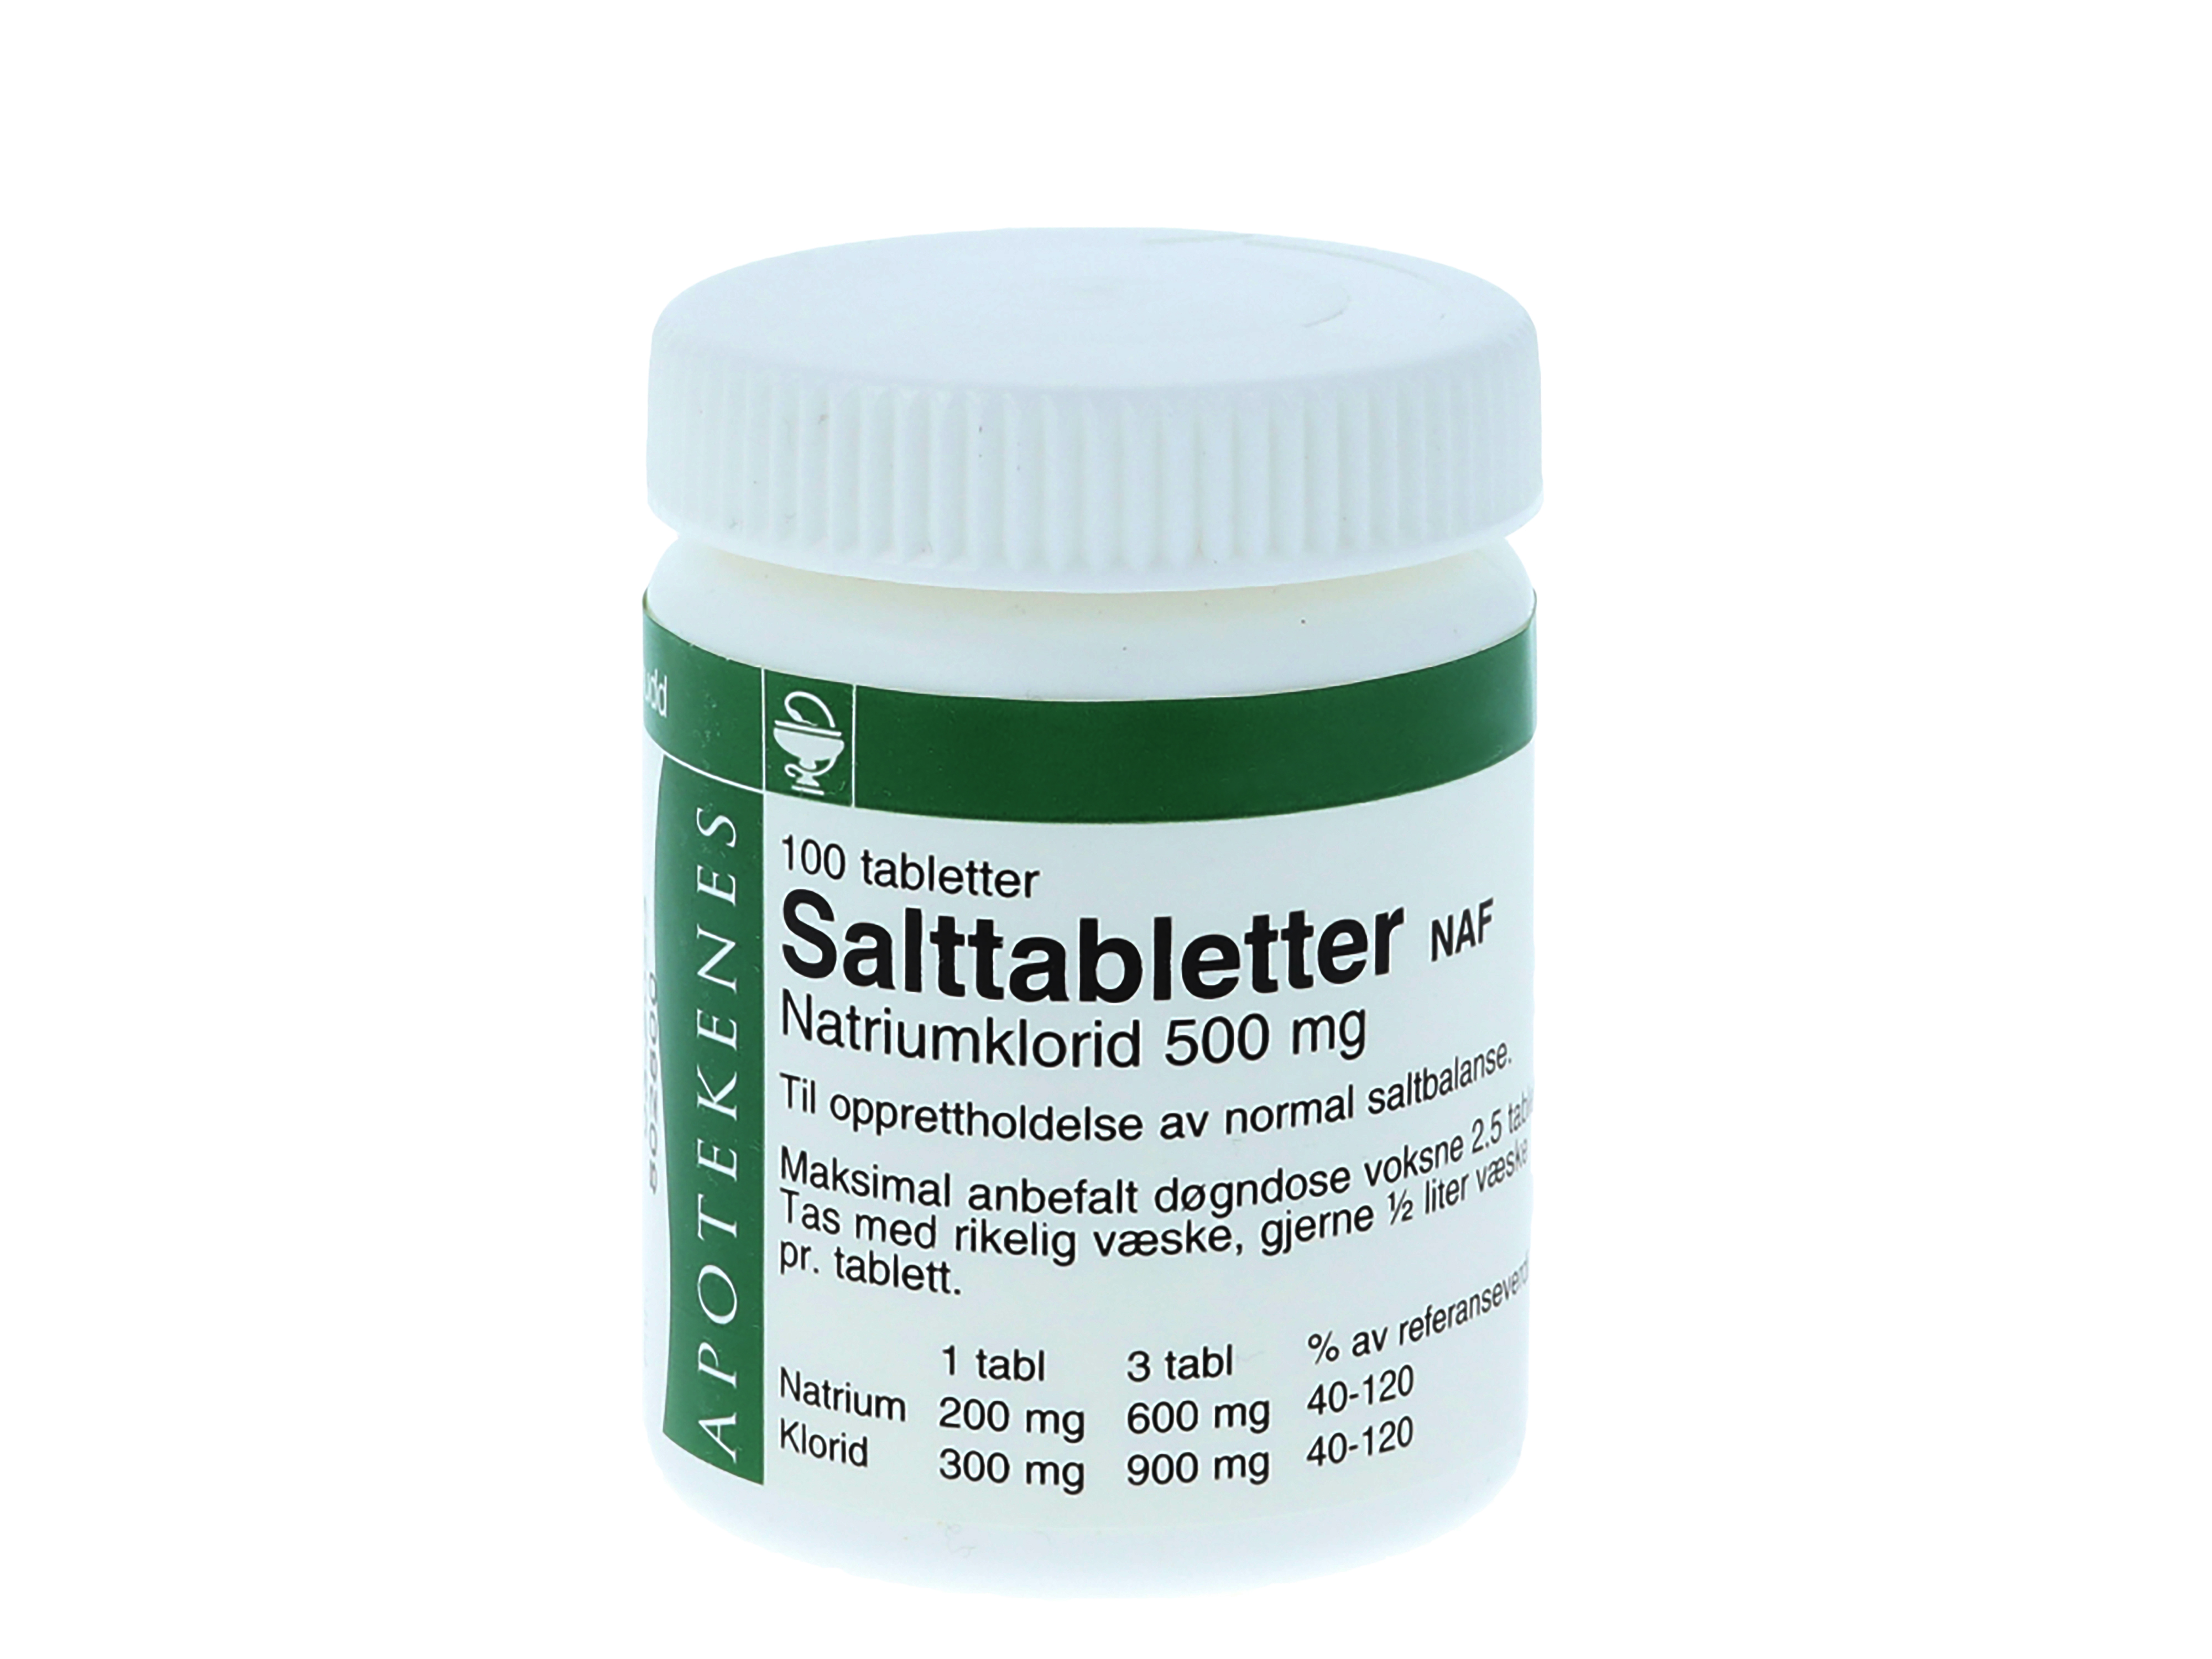 Salttabletter NAF tab 500mg, 100 stk